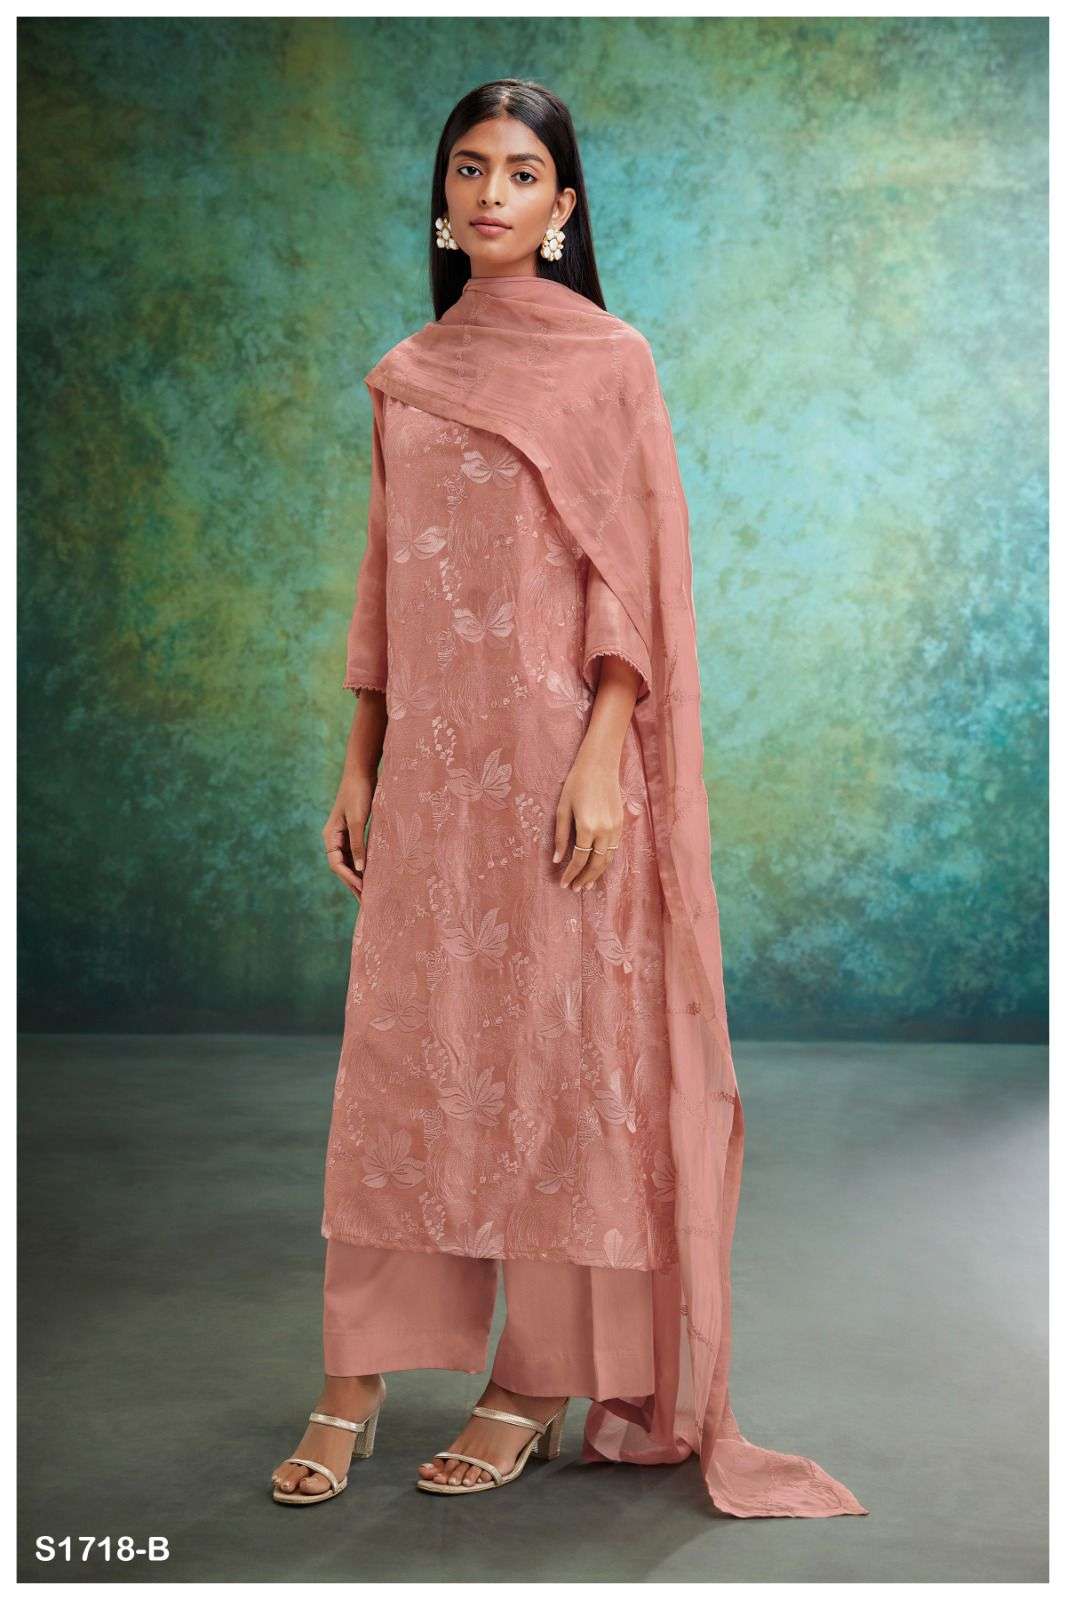 ganga rose 1718 series indian designer salwar kameez catalogue design 2023